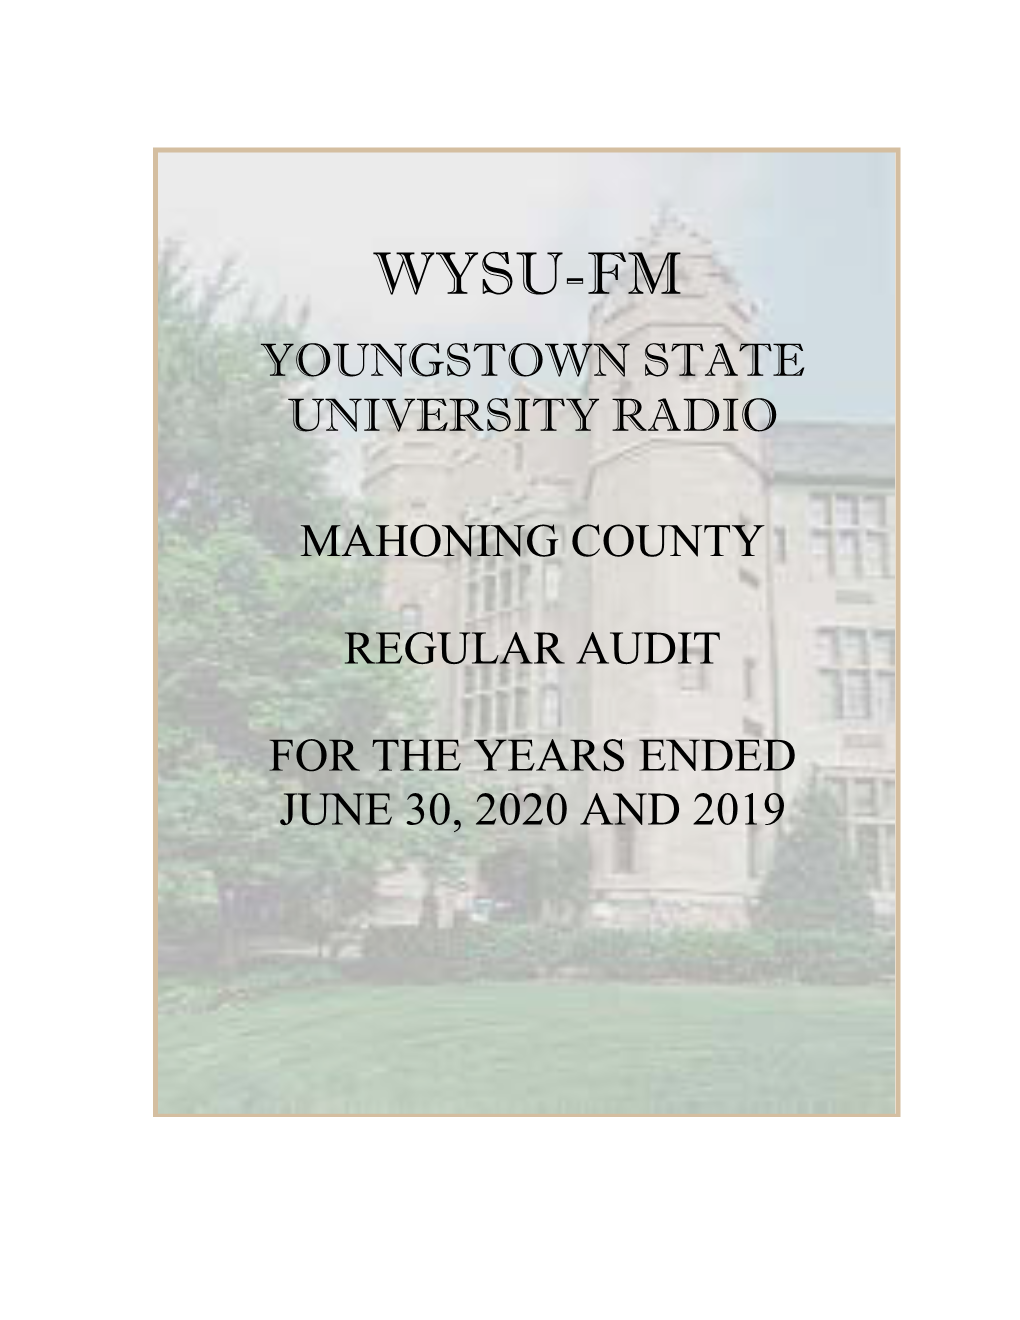 WYSU's Annual Financial Report